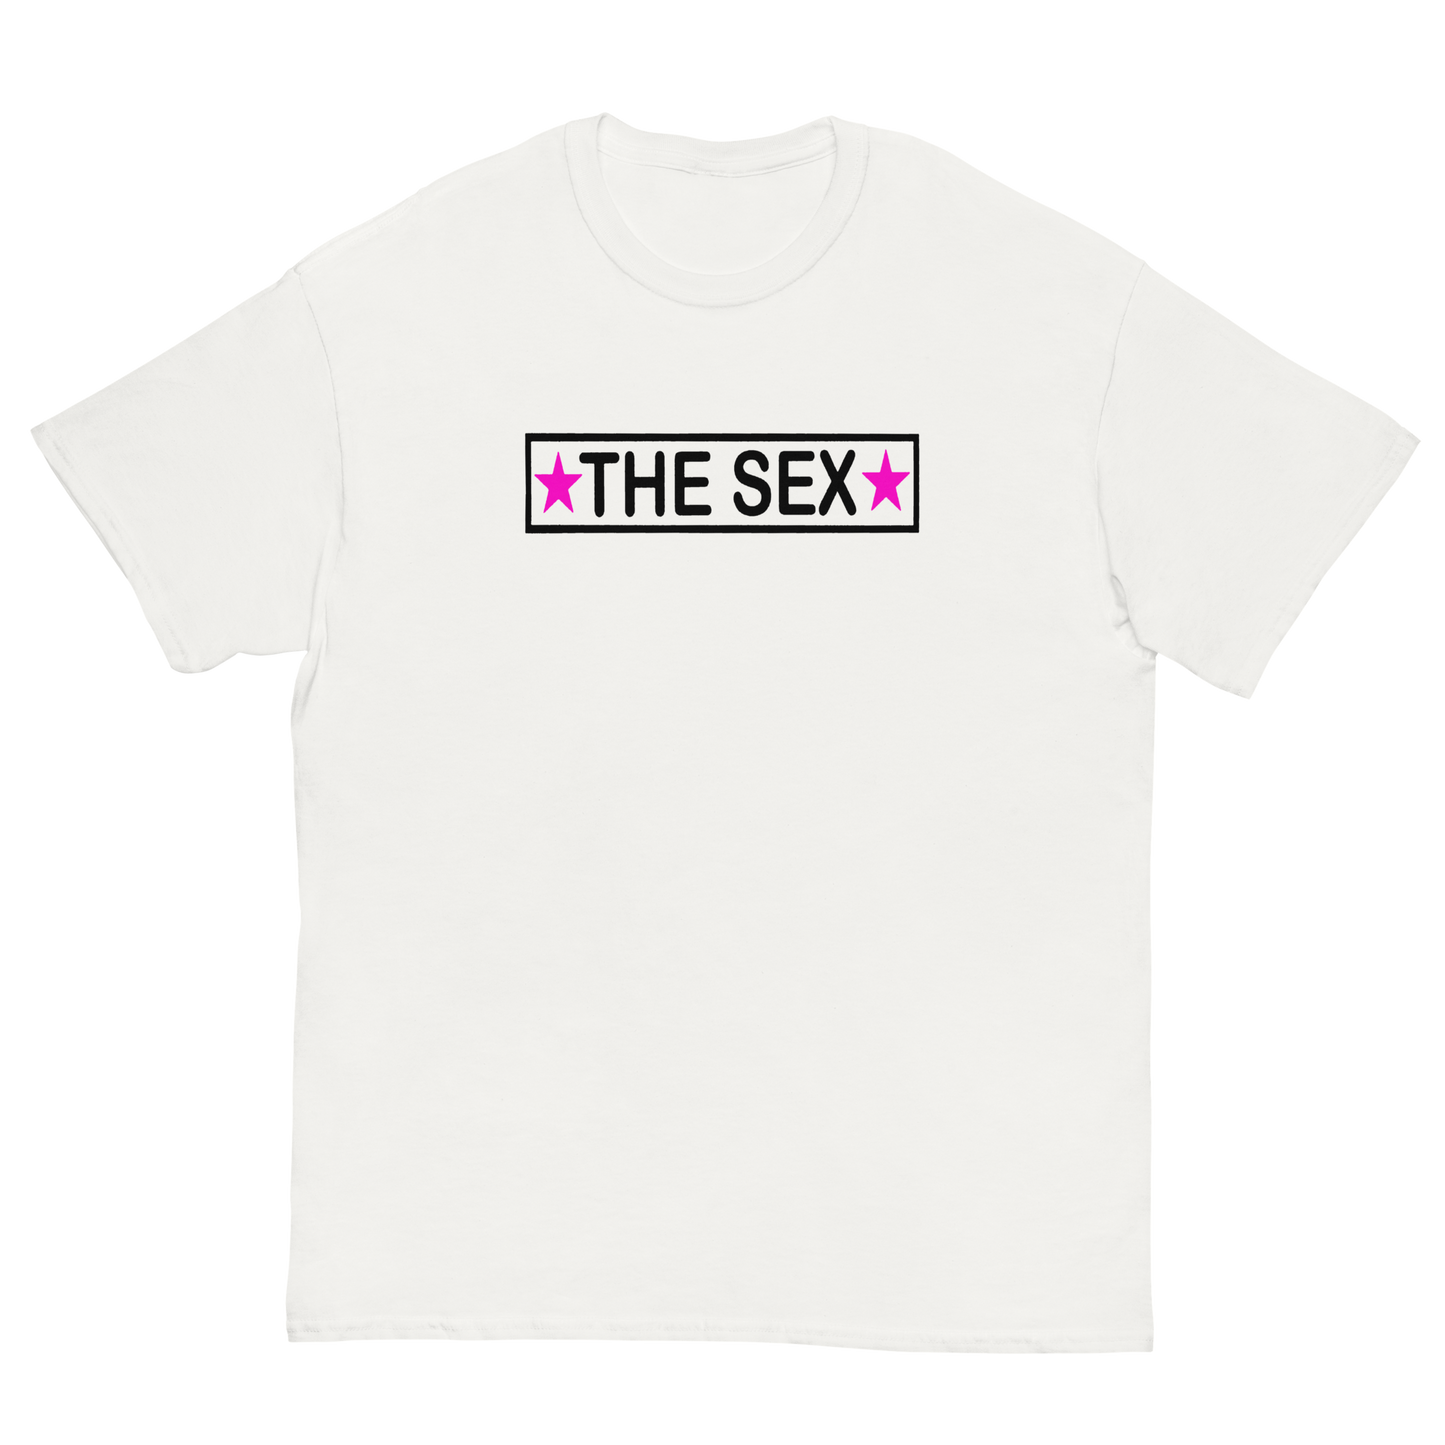 THE SEX T-SHIRT